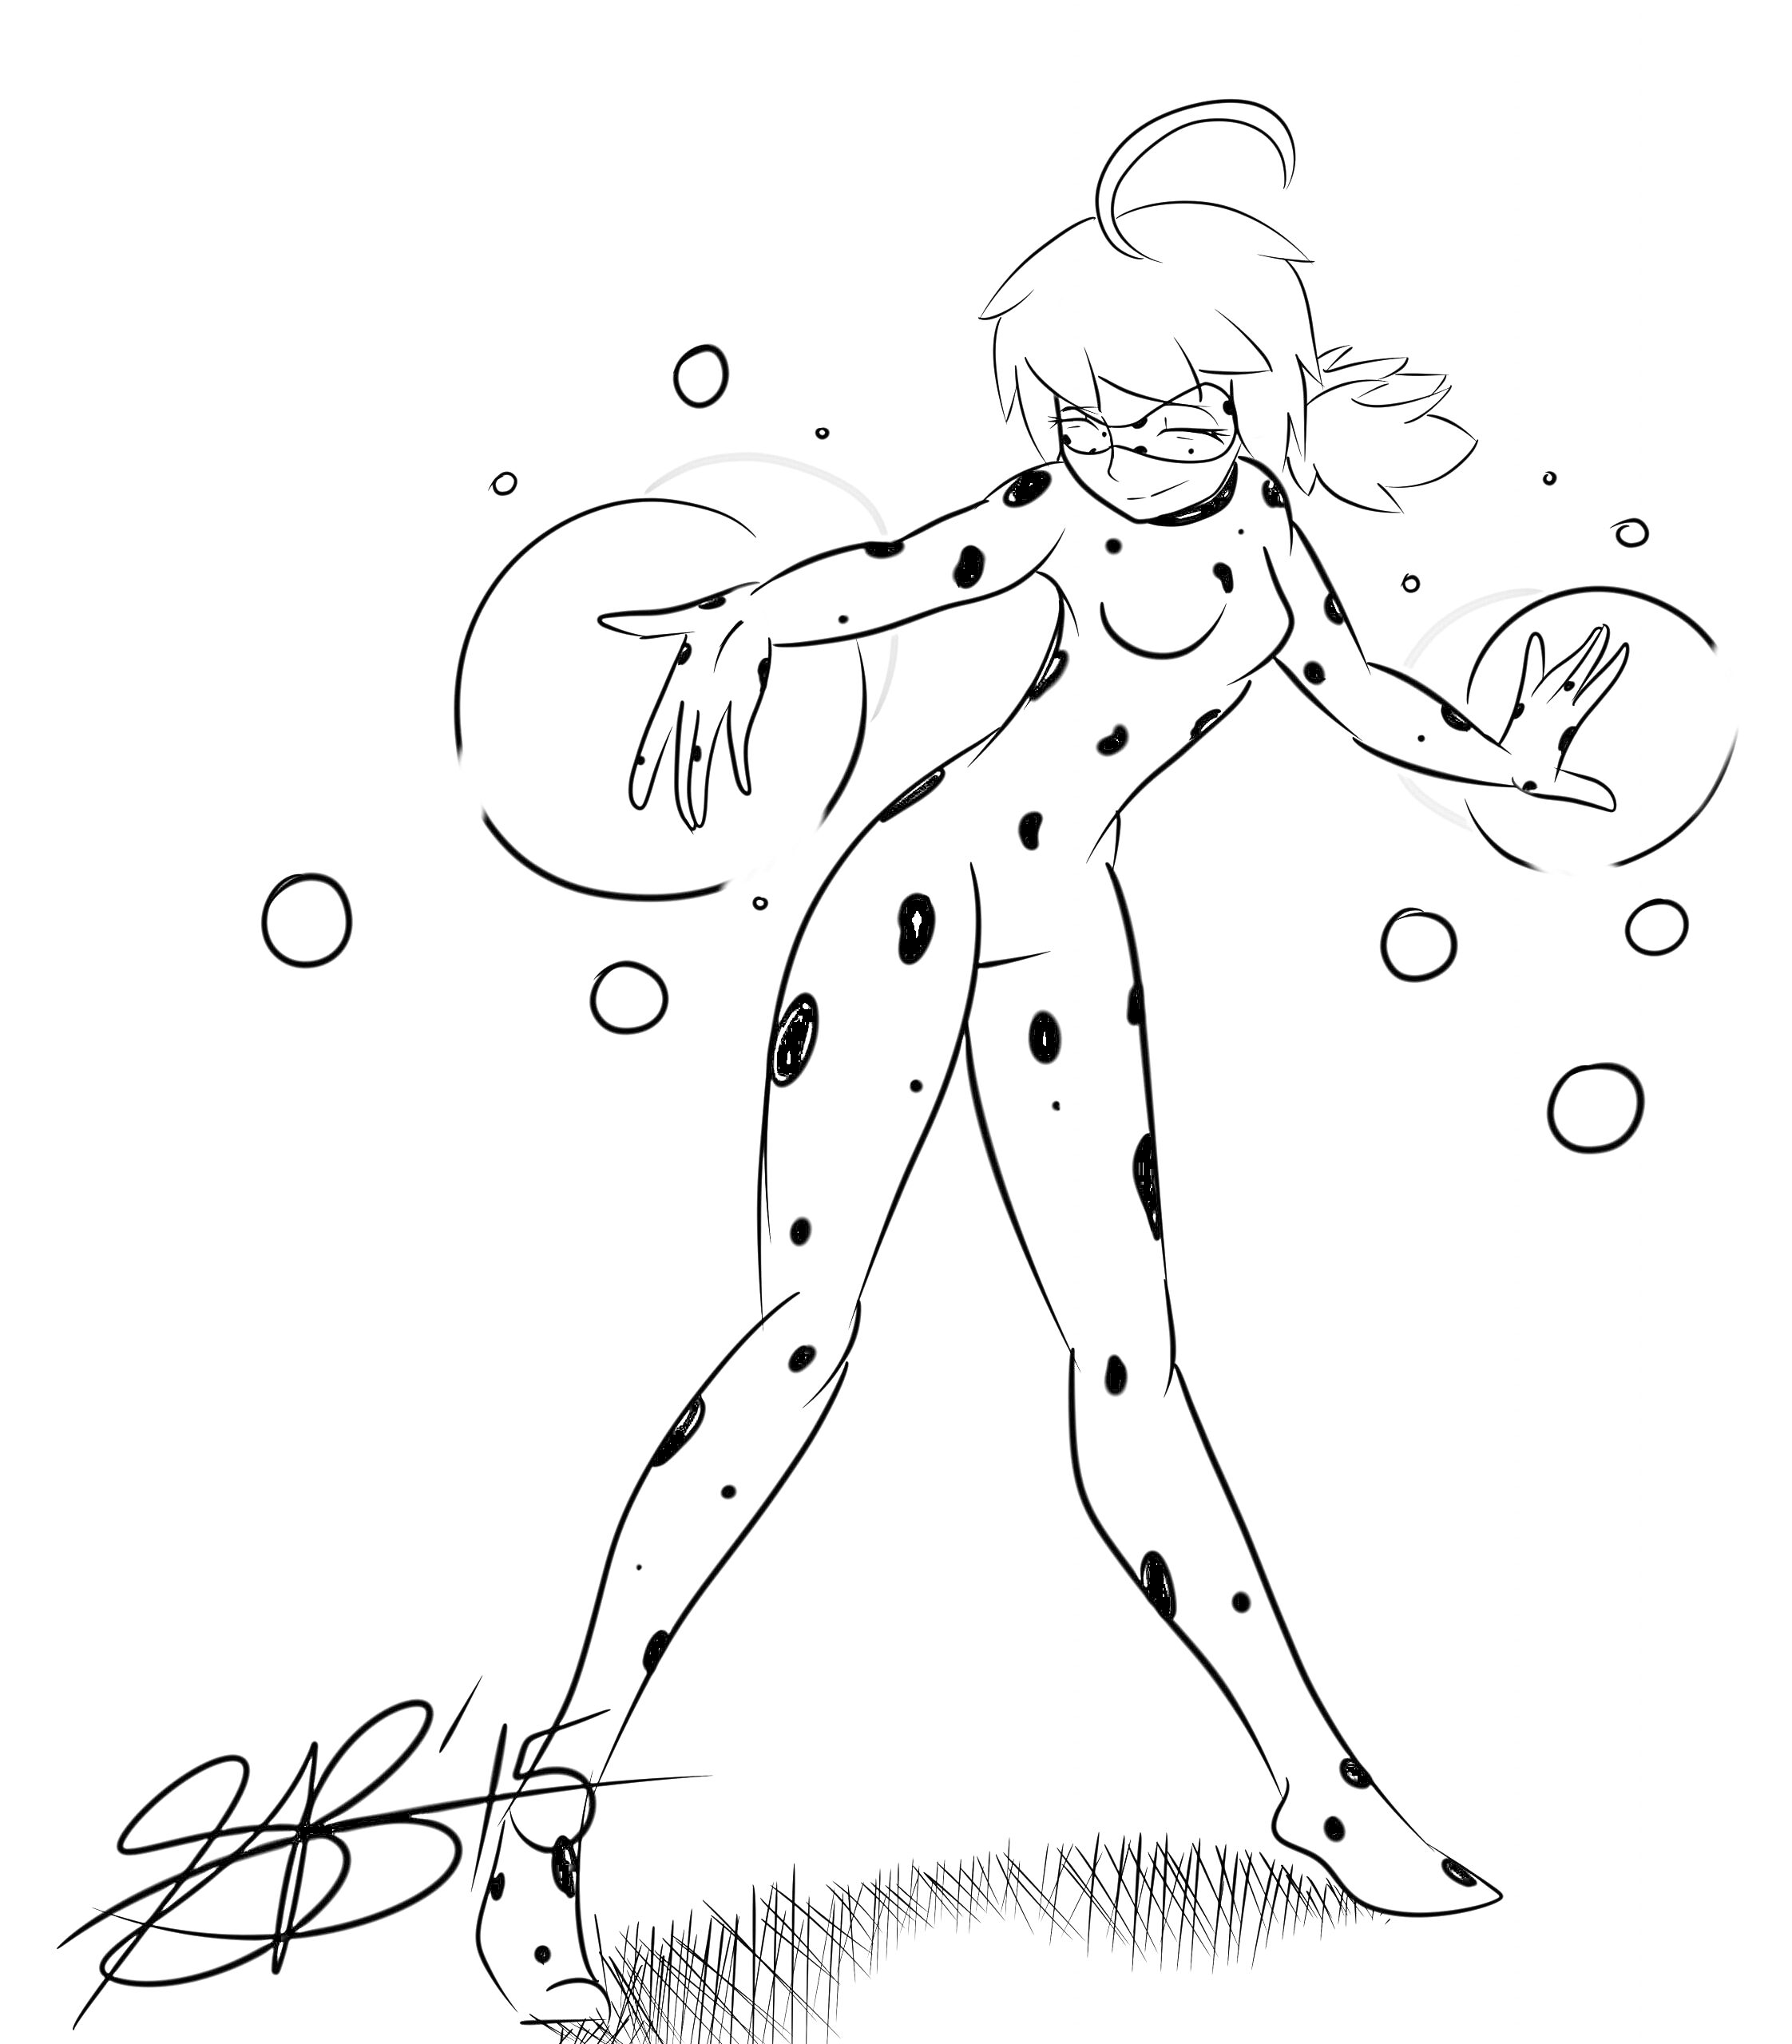 Раскраска Леди Баг в костюме с пятнами, стоящая в динамичной позе с пузырями вокруг.